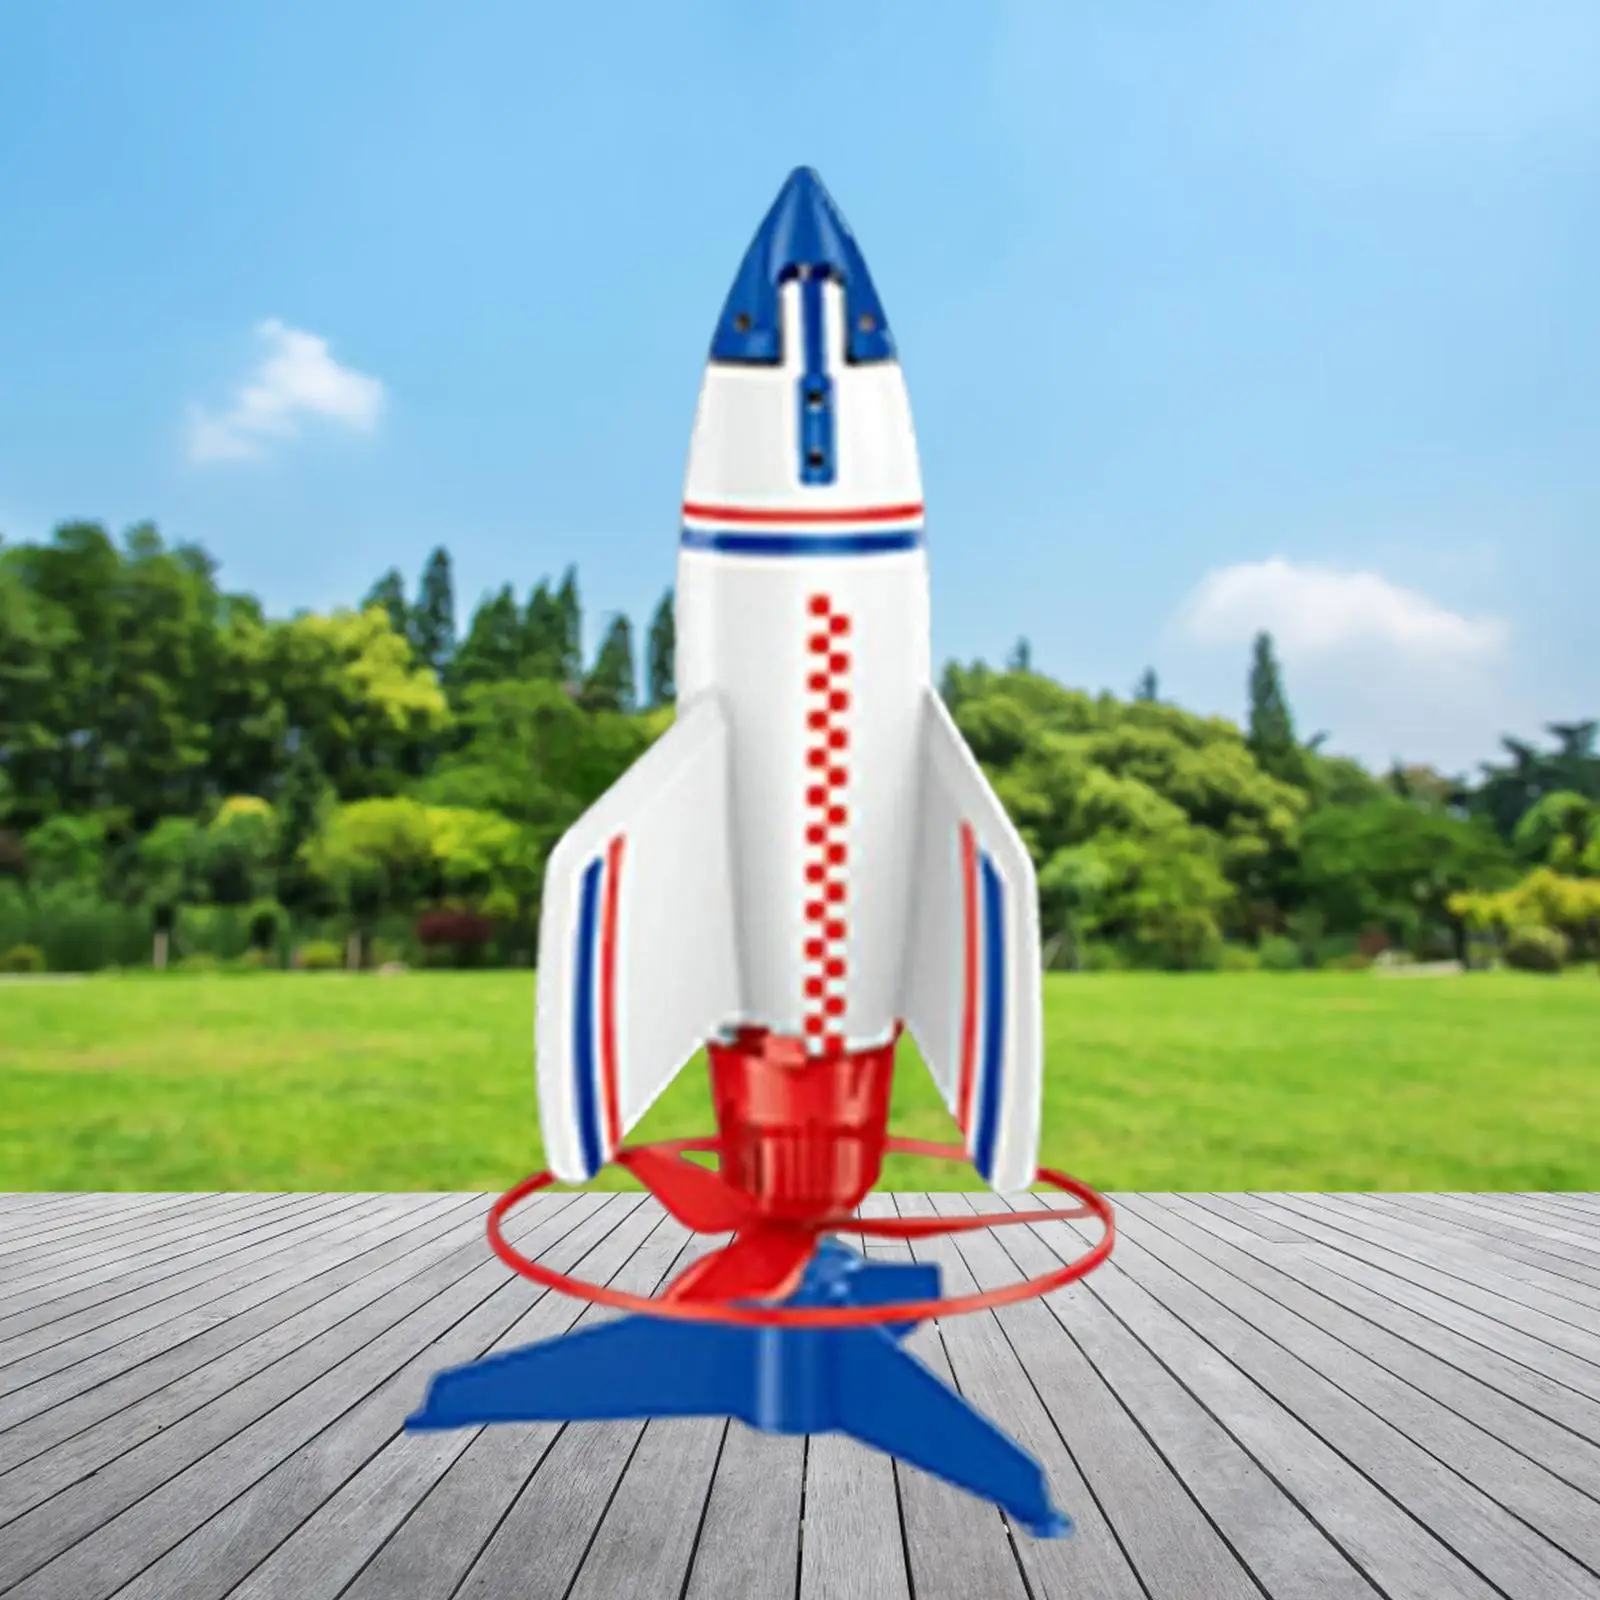 Rocket Launcher Toy Outdoor Toy Foam Rockets Games Activities